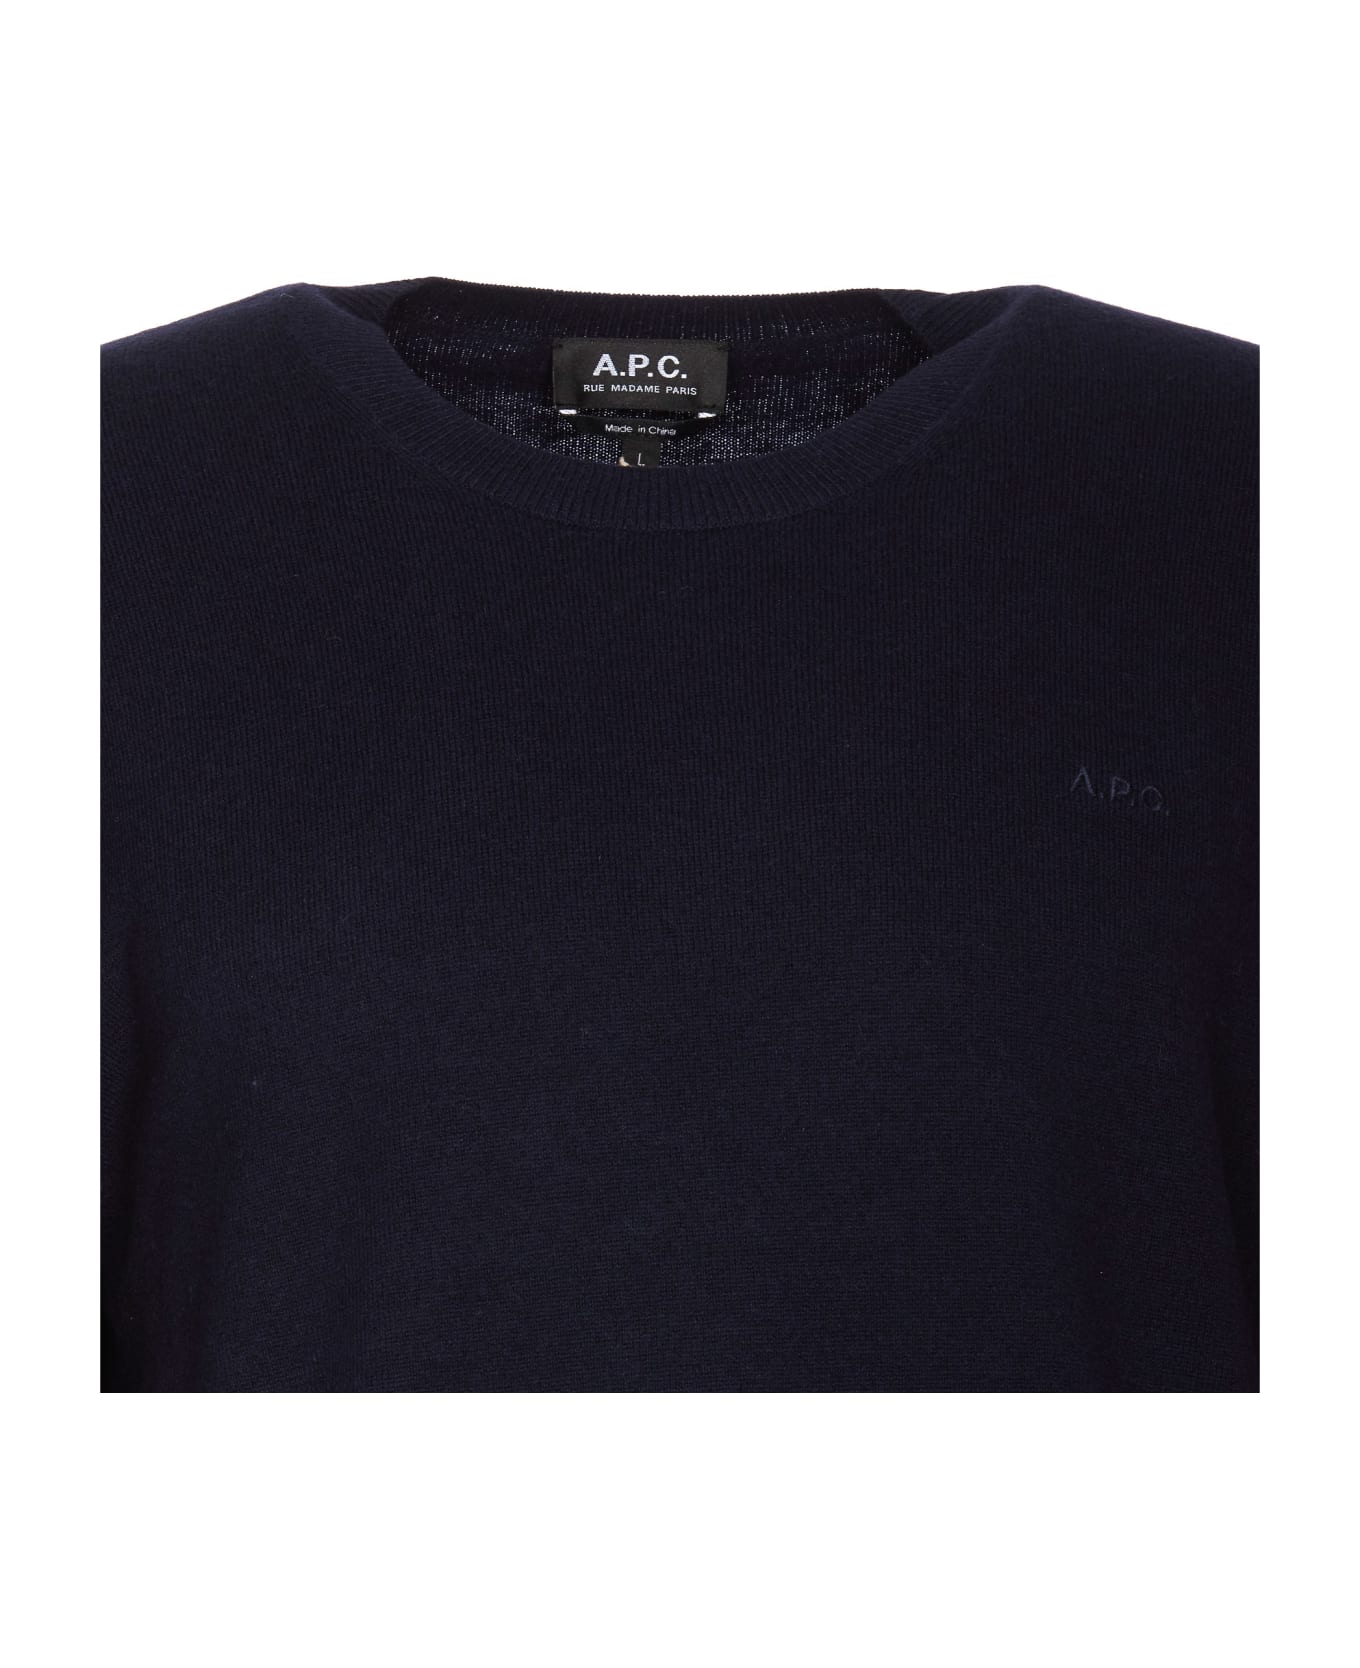 A.P.C. Sweater - Blue